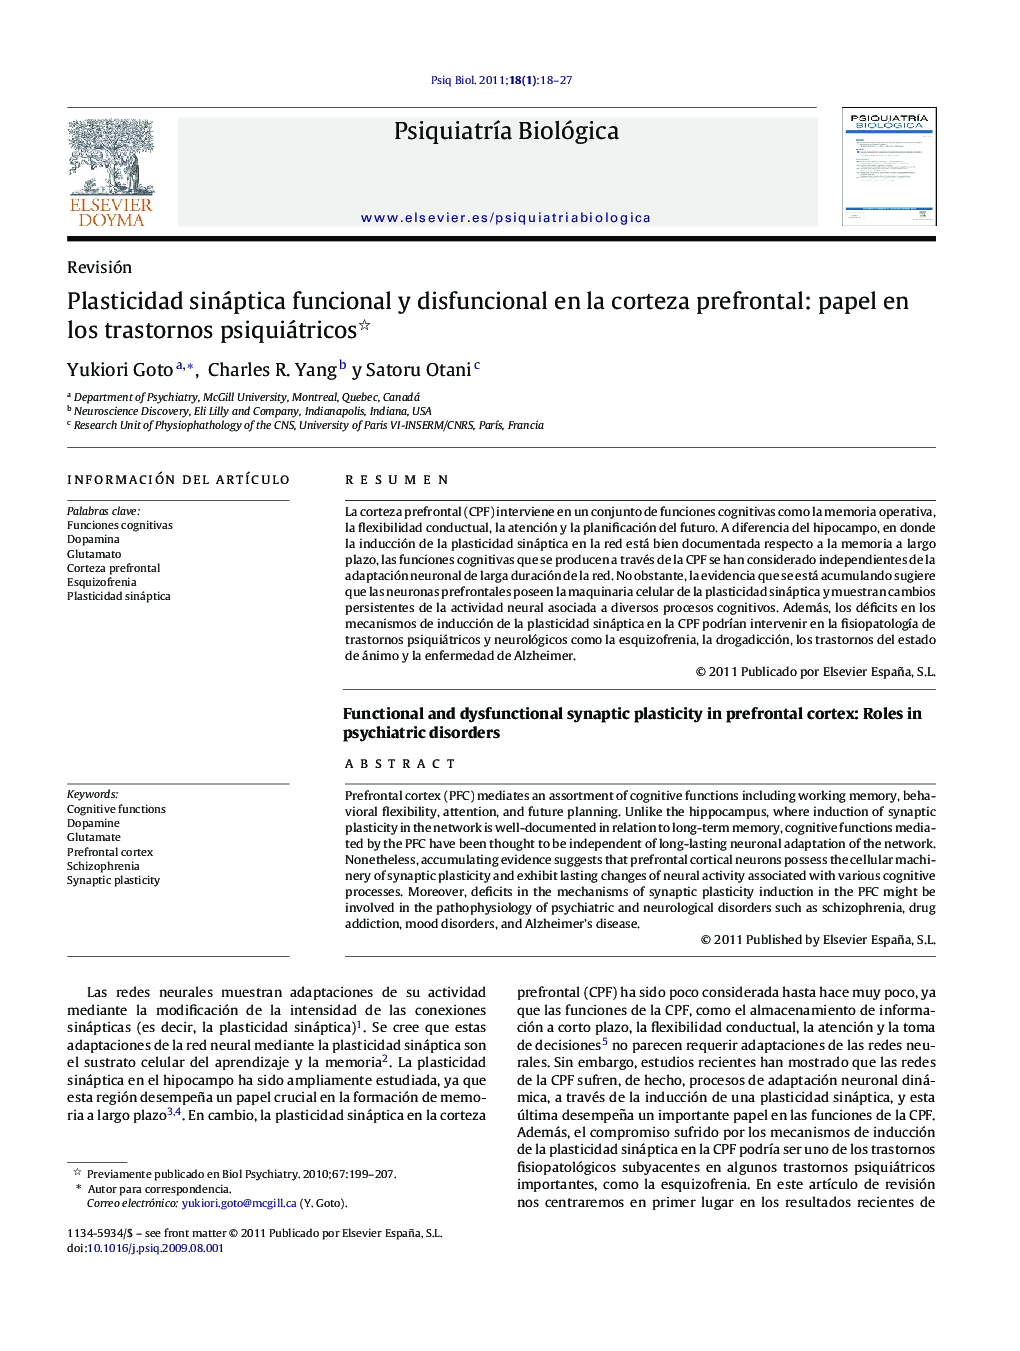 Plasticidad sináptica funcional y disfuncional en la corteza prefrontal: papel en los trastornos psiquiátricos